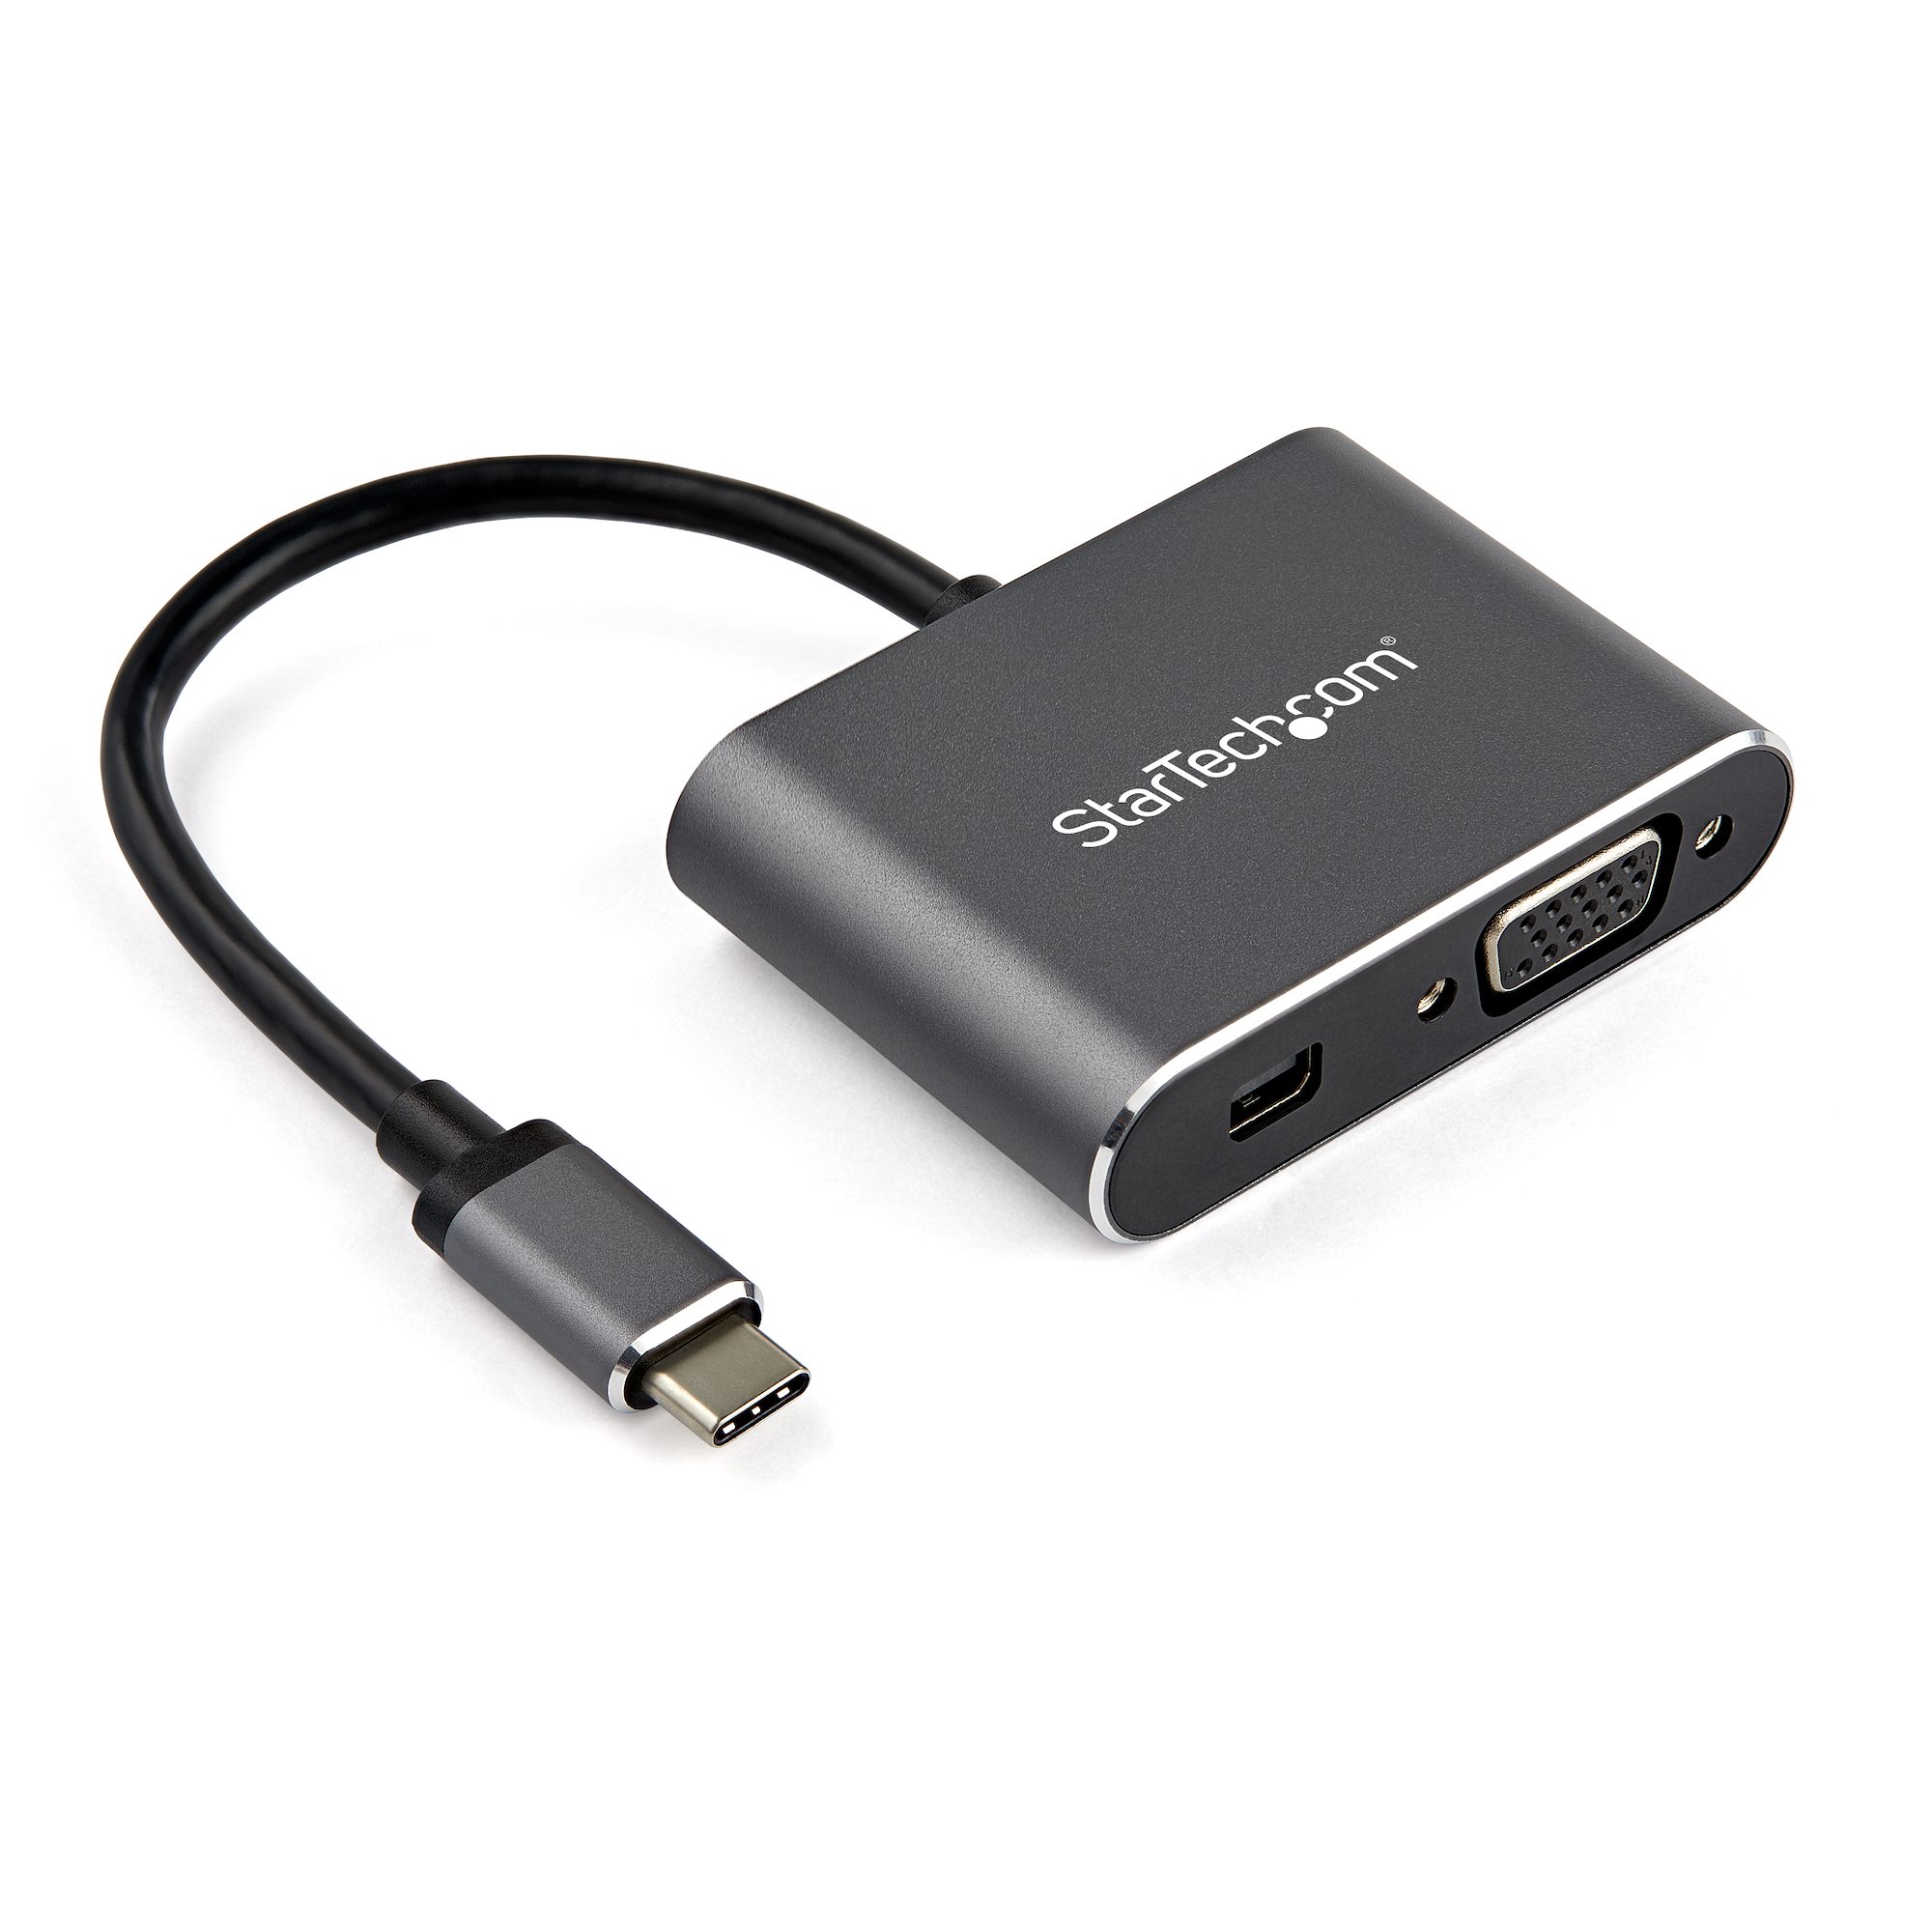 USB-Cマルチ変換アダプタ mDP(4K60Hz)またはVGA出力 HDR対応 - USB-C